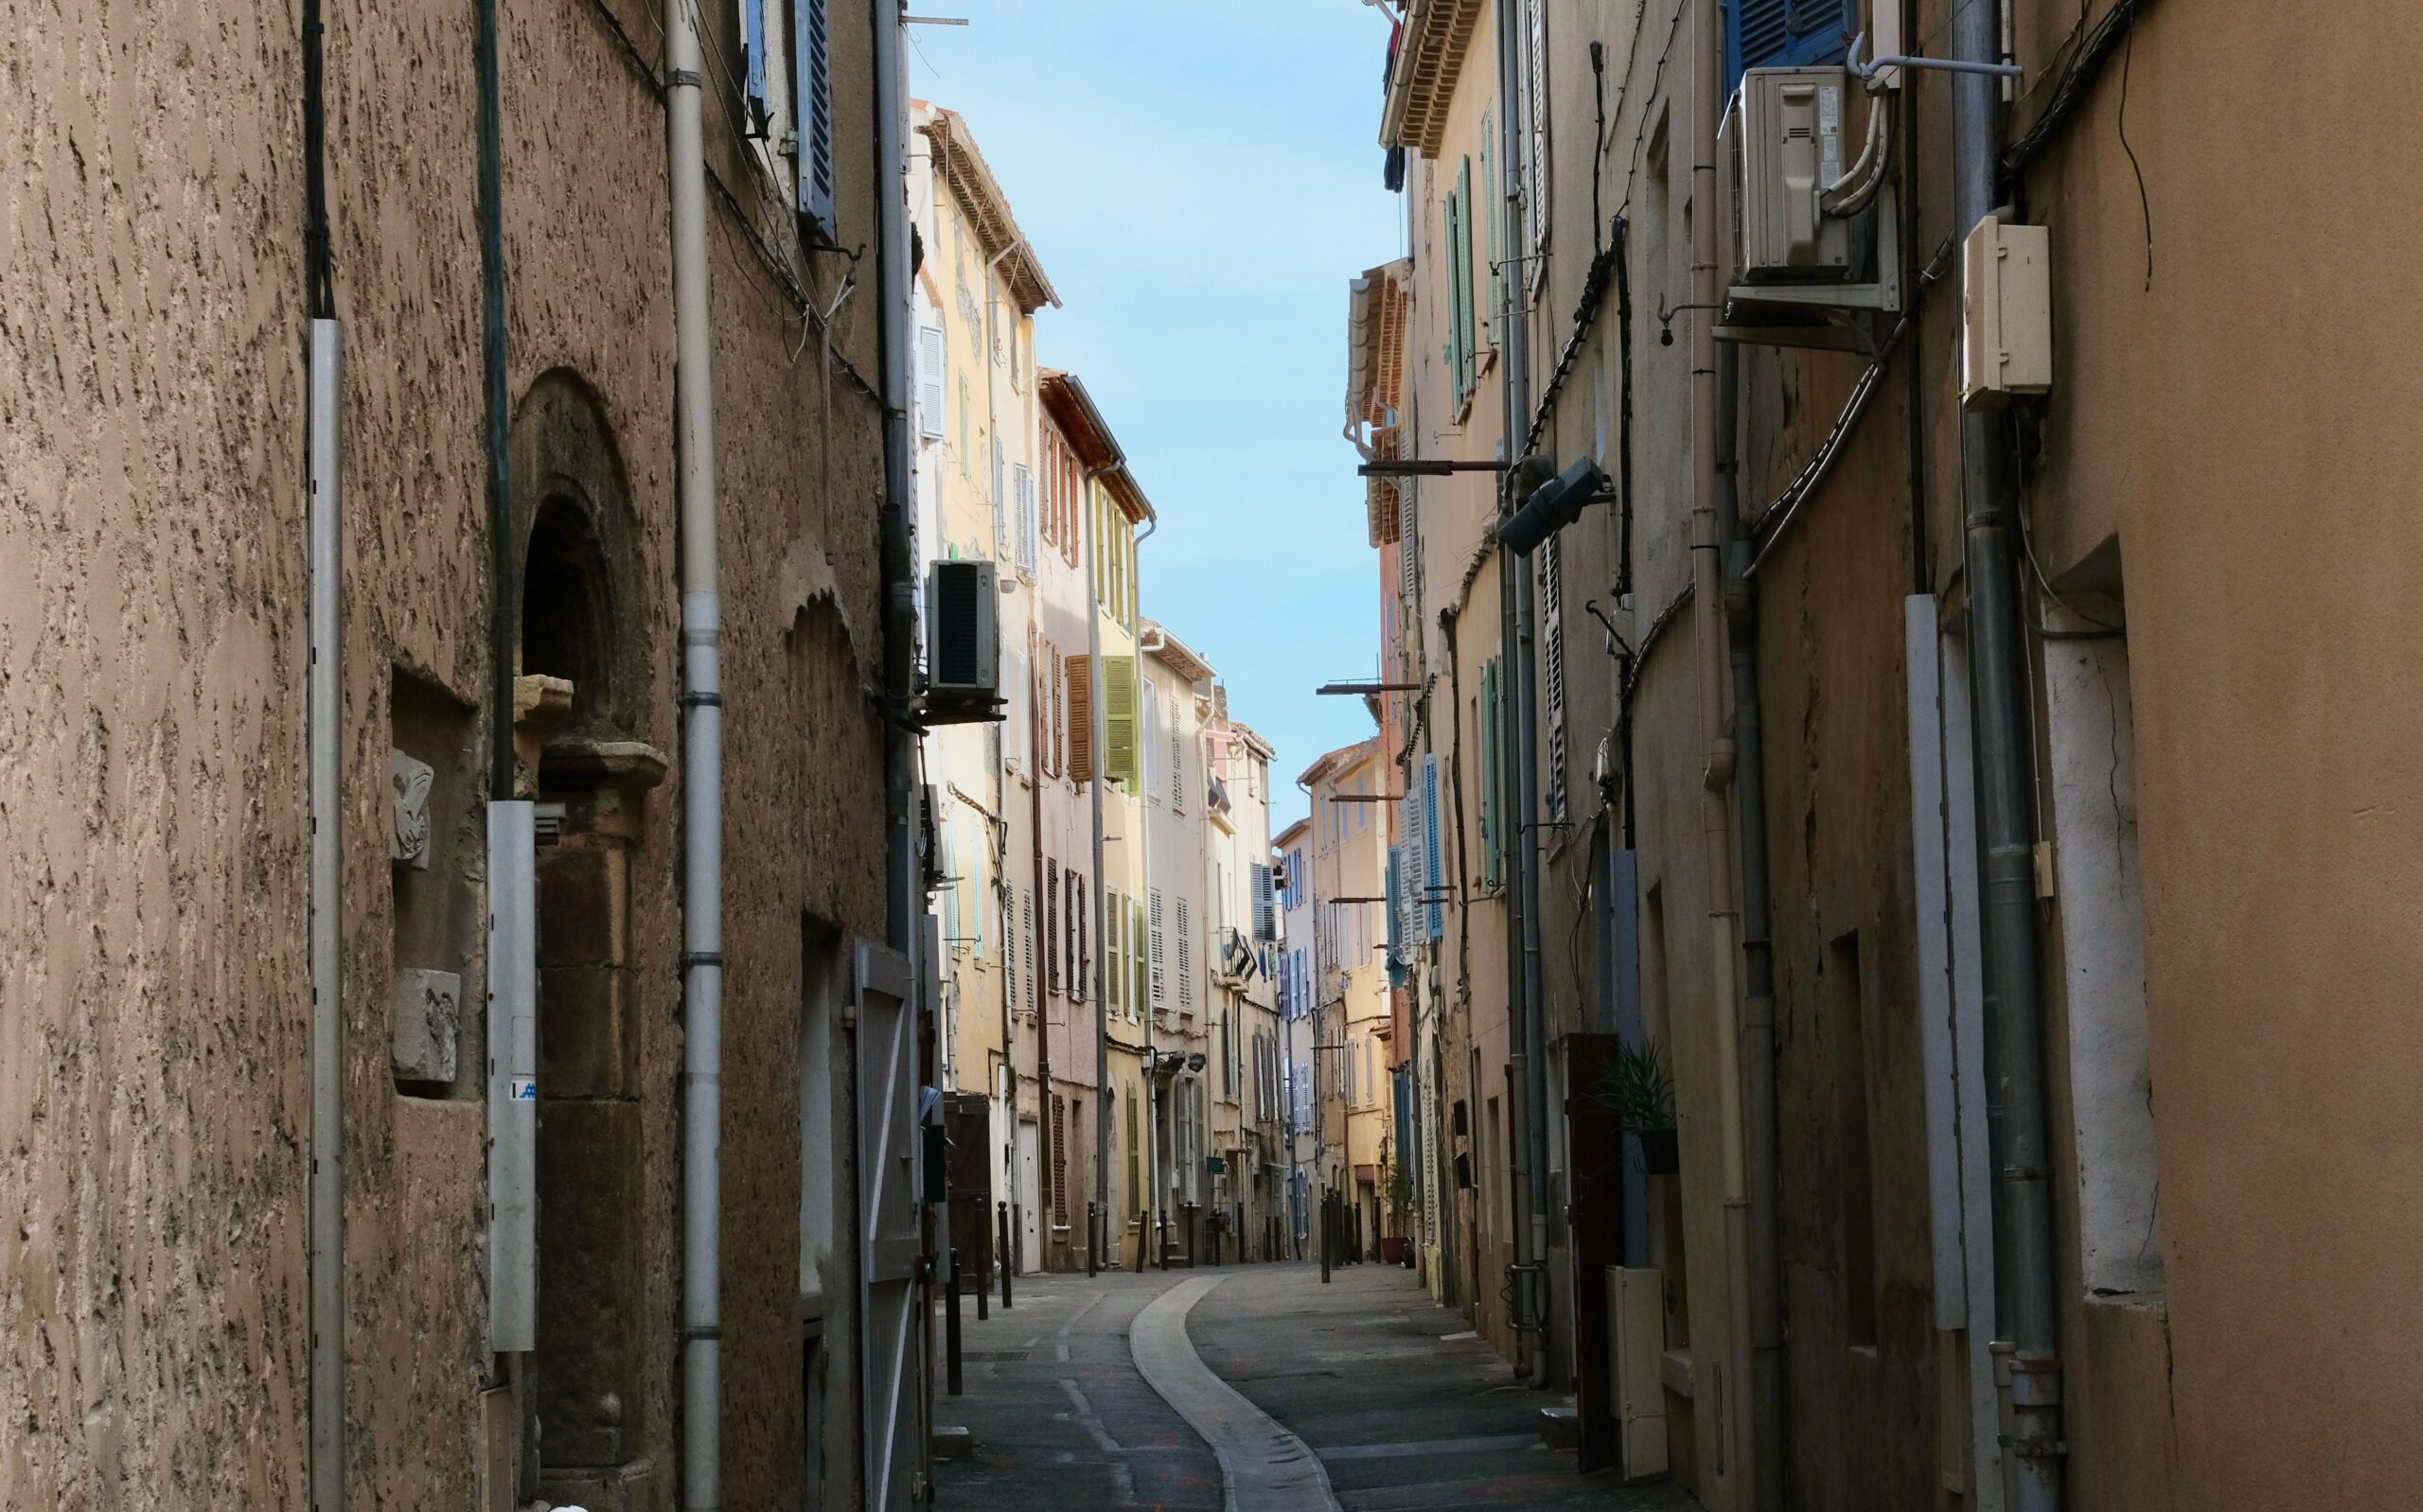 A narrow street in La Ciotat, France